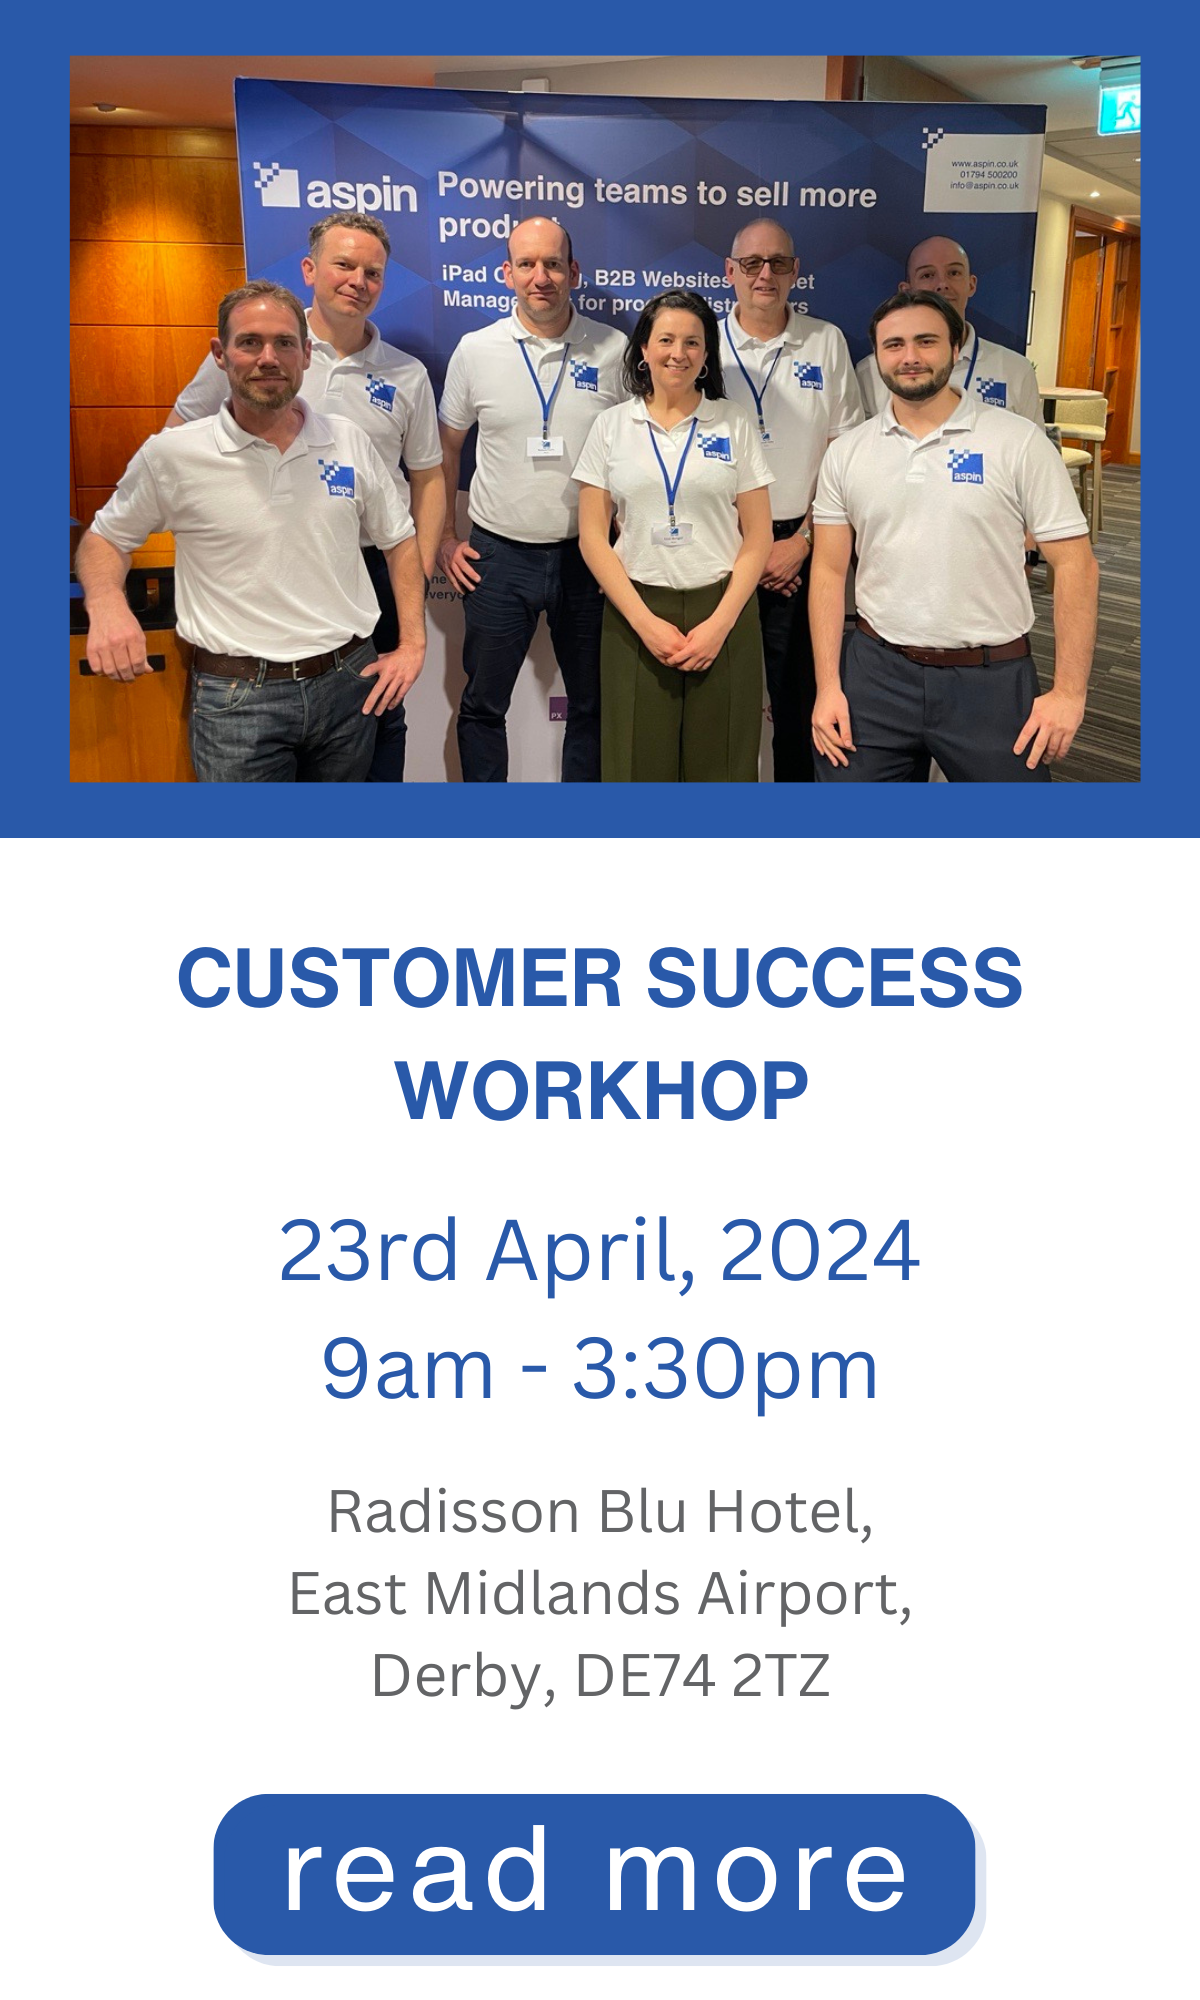 Customer Success Workshop in Derby